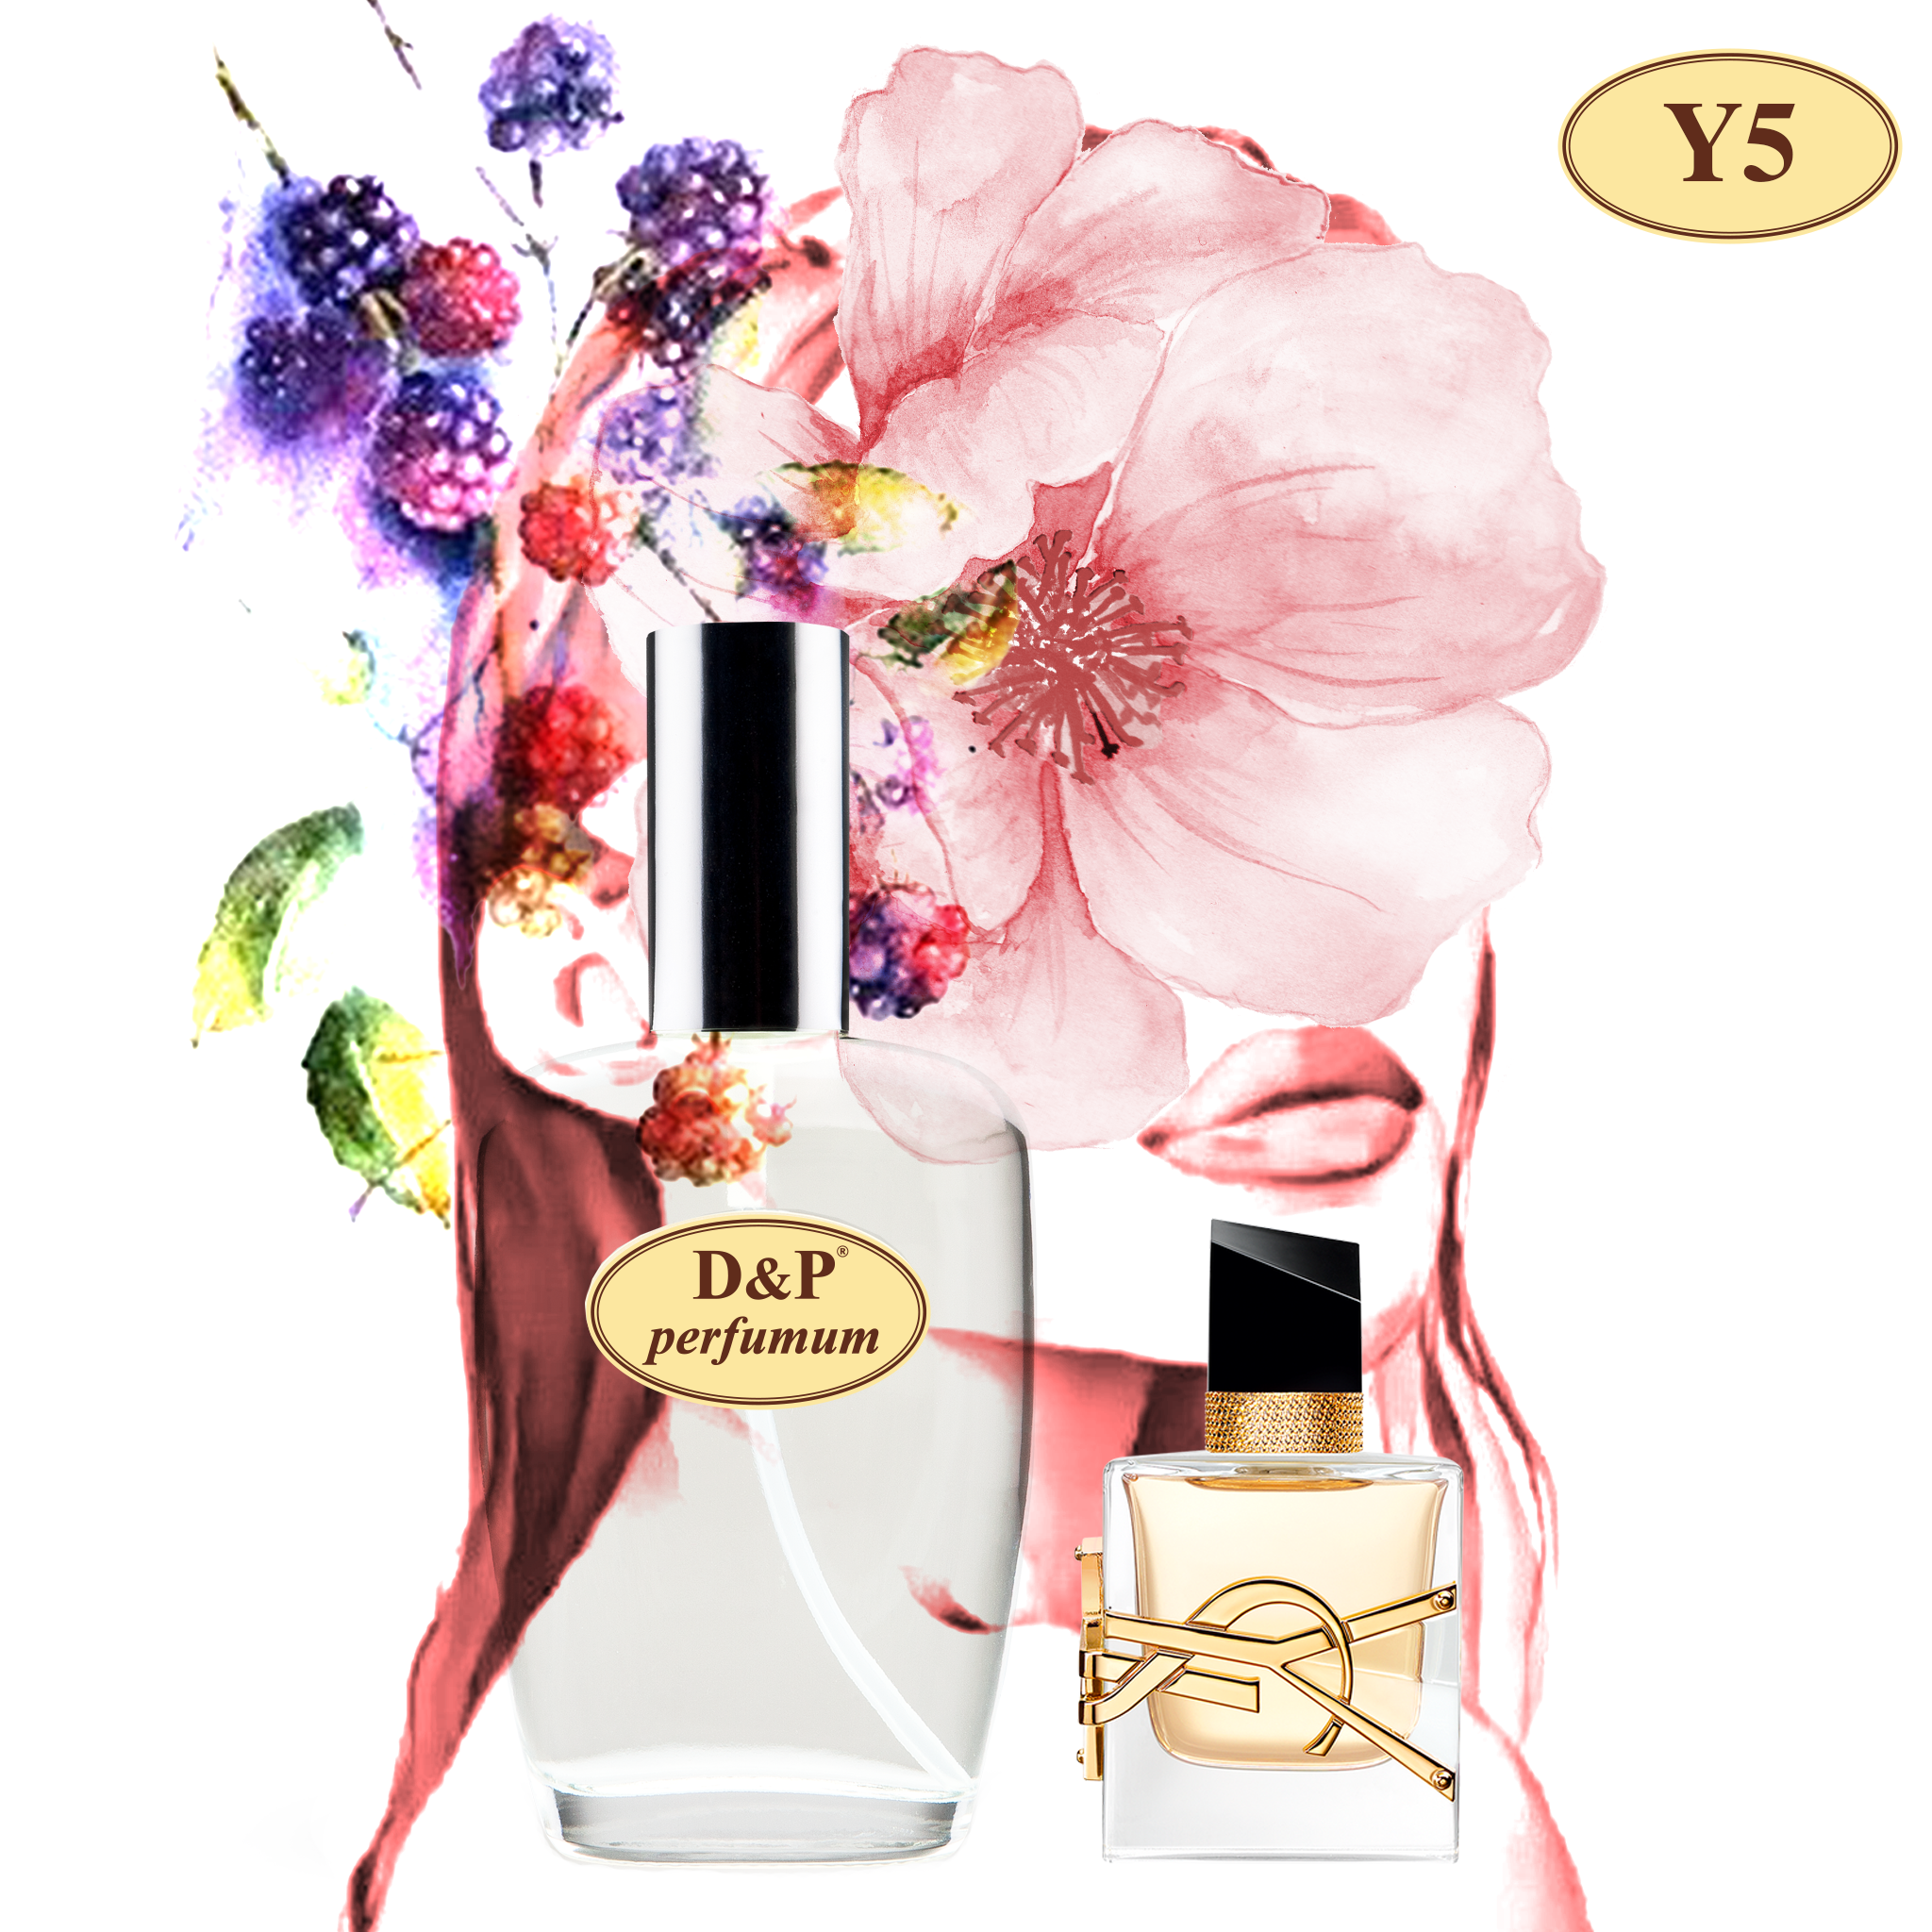 Marque 193 ▷ (Chanel Coco Mademoiselle) ▷ Perfume árabe 🥇 25ml